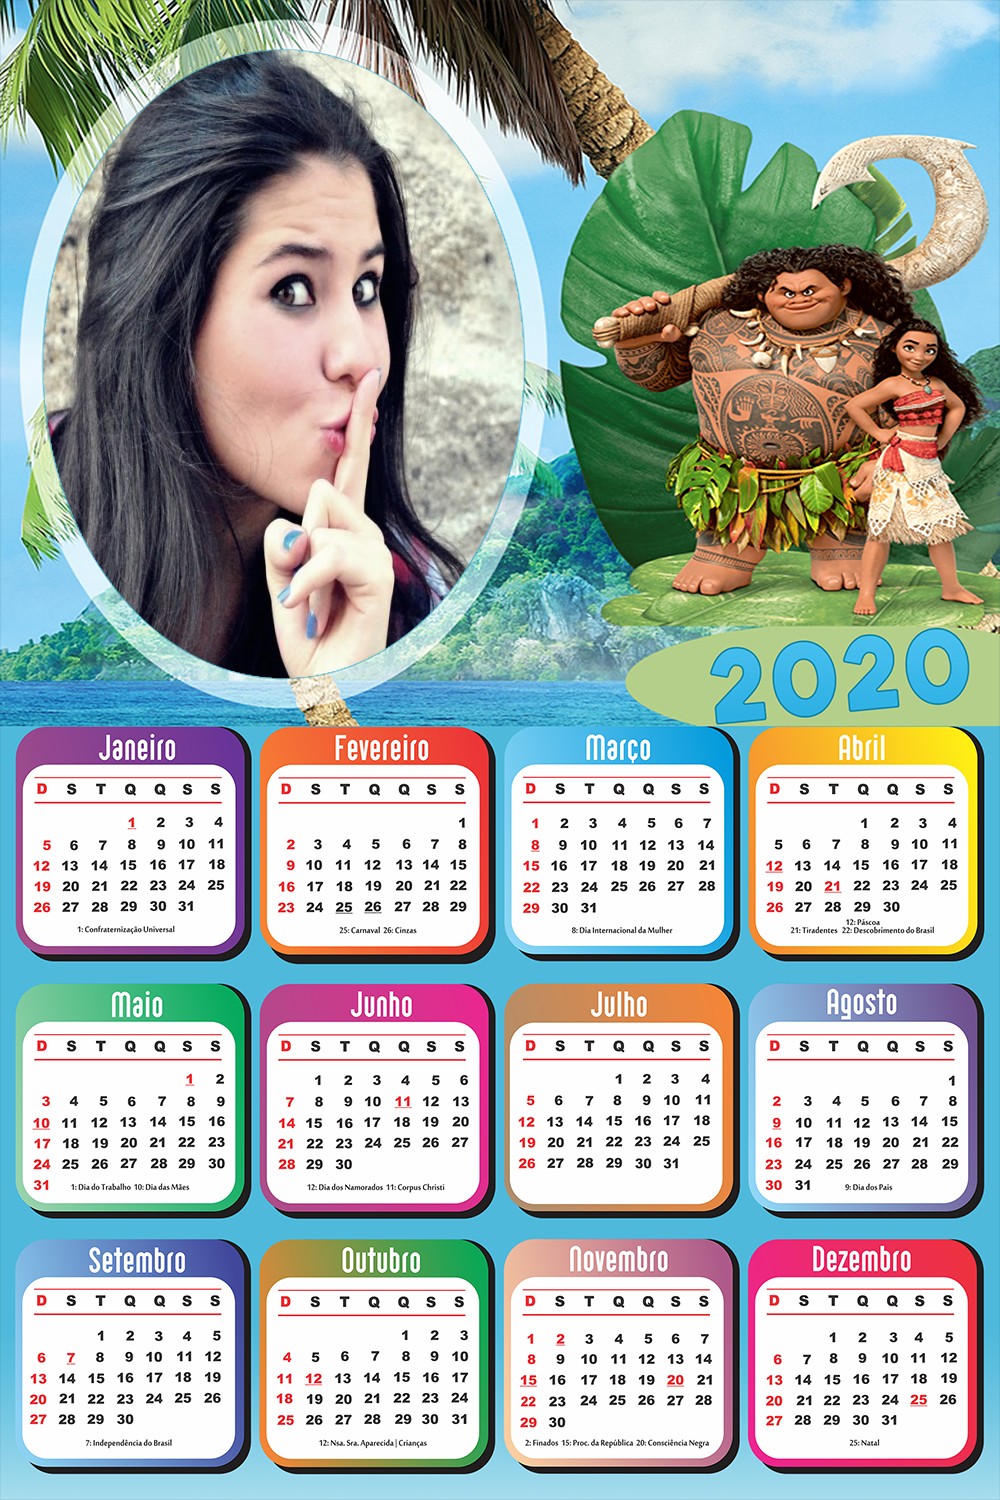 montagem-de-fotos-infantil-moana-calendario-2020